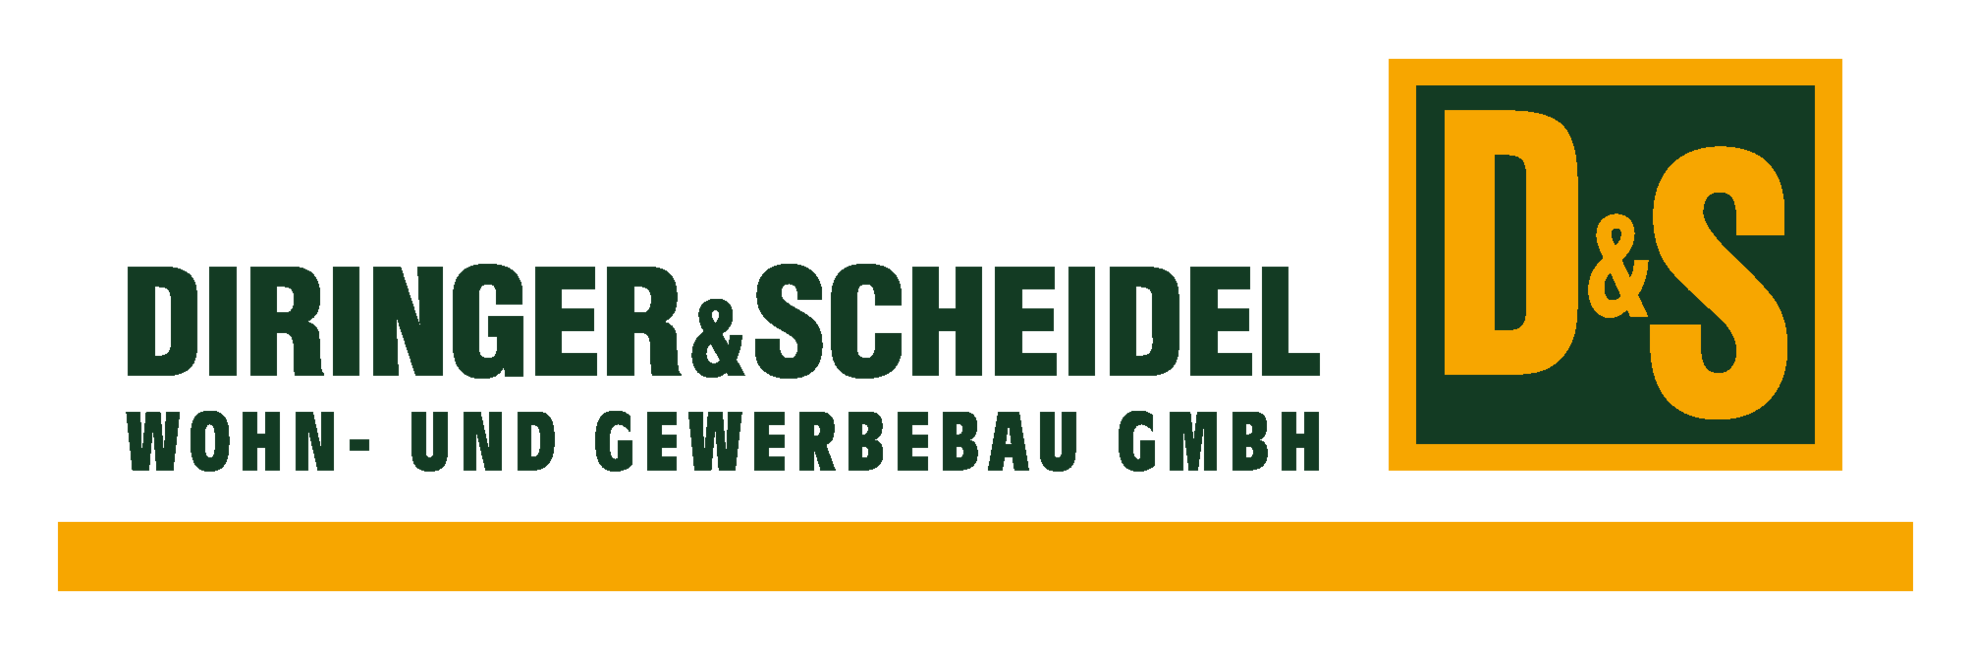 Logo DIRINGER & SCHEIDEL Wohn- und Gewerbebau